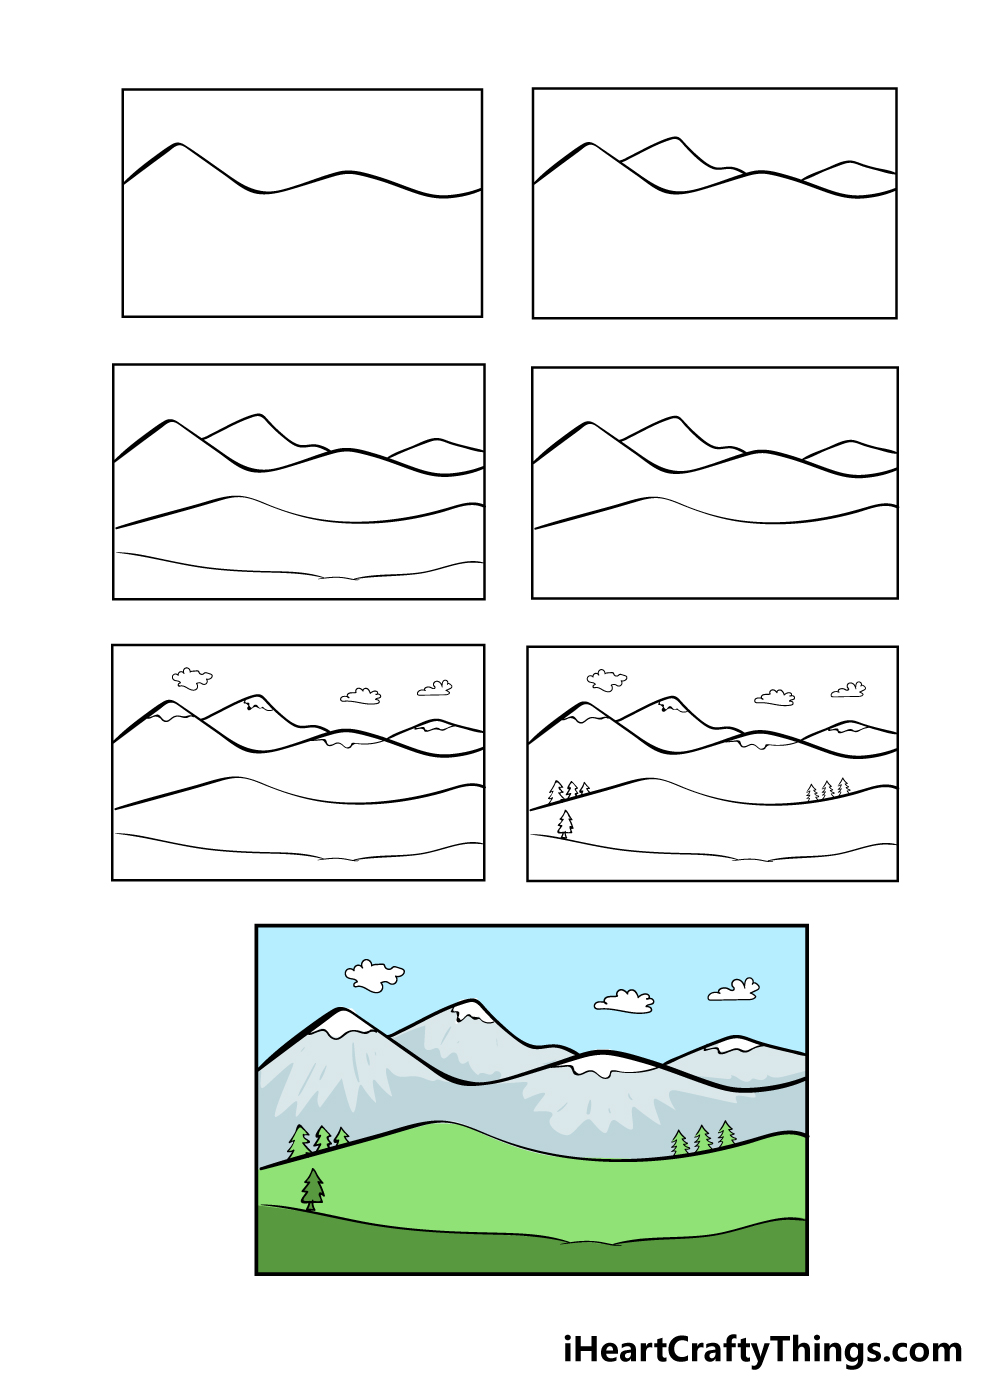 3 bước đơn giản để vẽ dãy núi